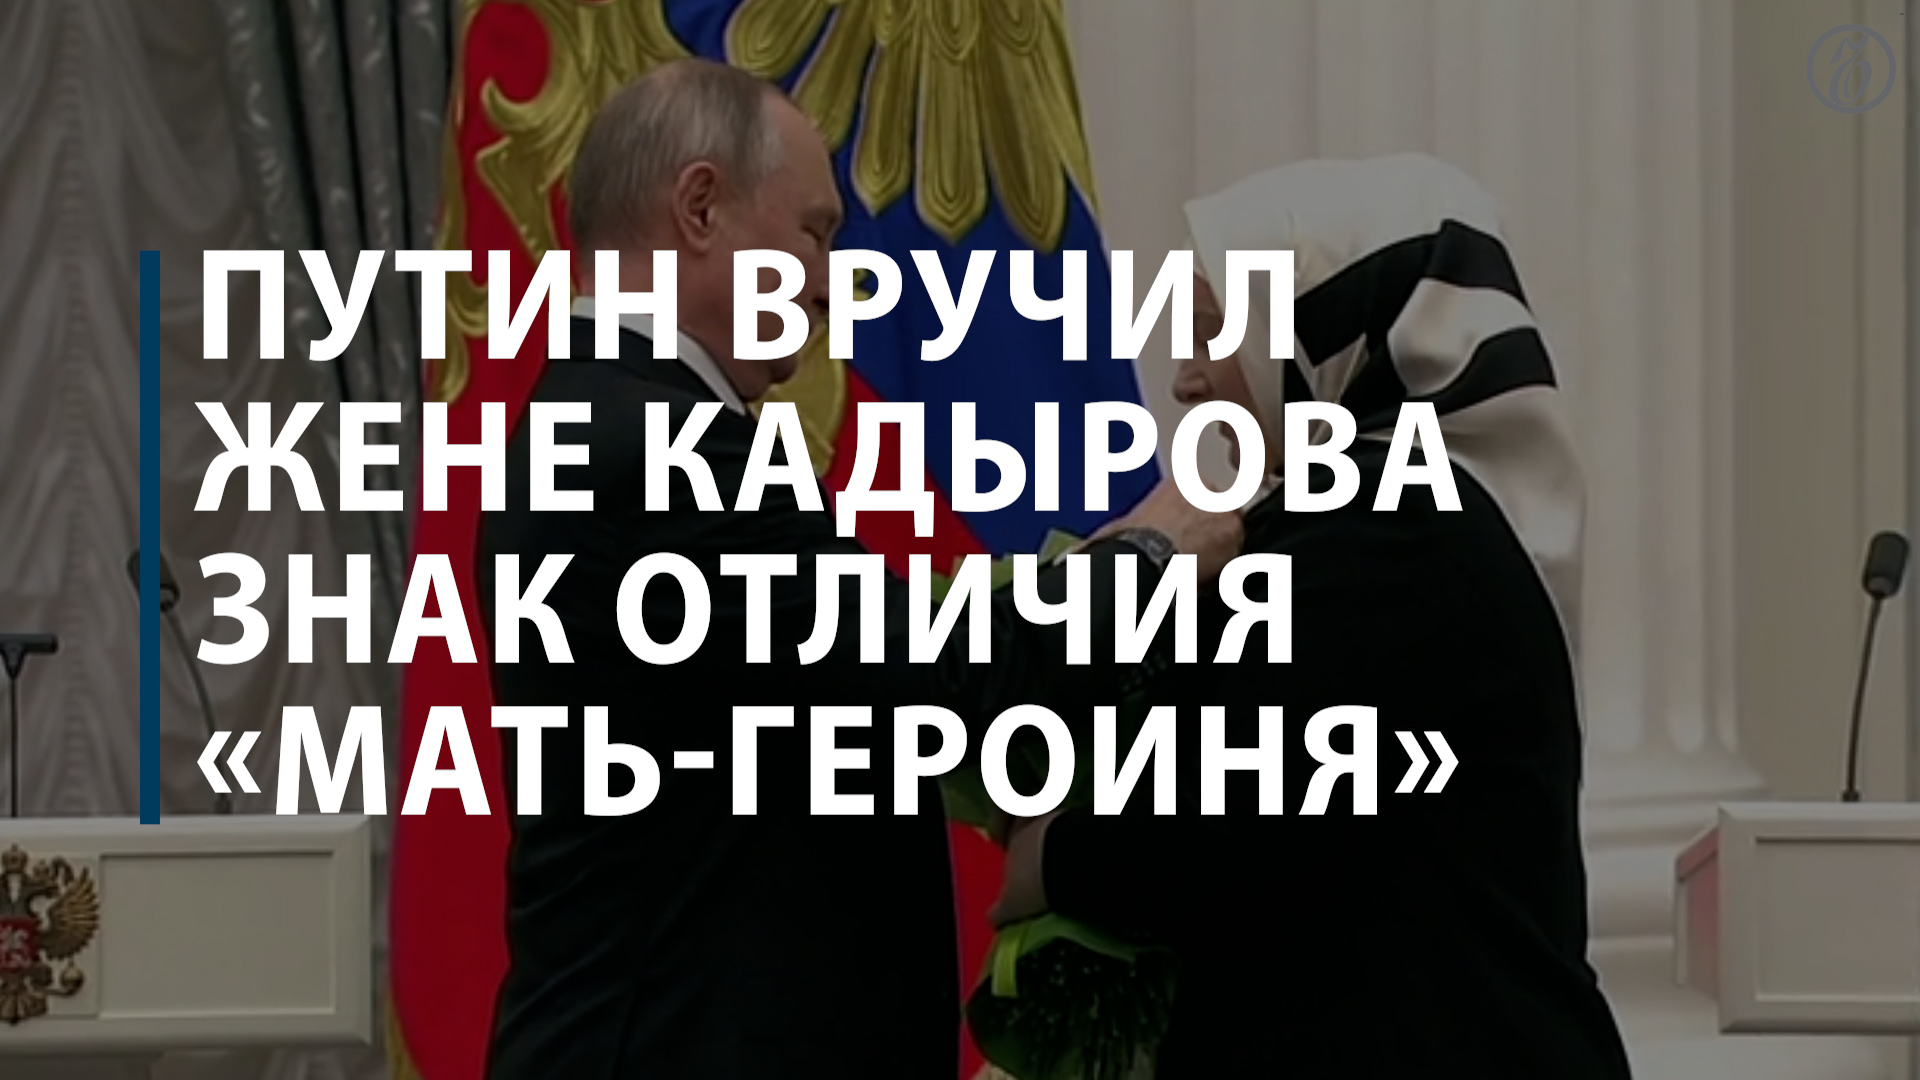 Путин вручил жене Кадырова знак отличия «Мать-героиня»